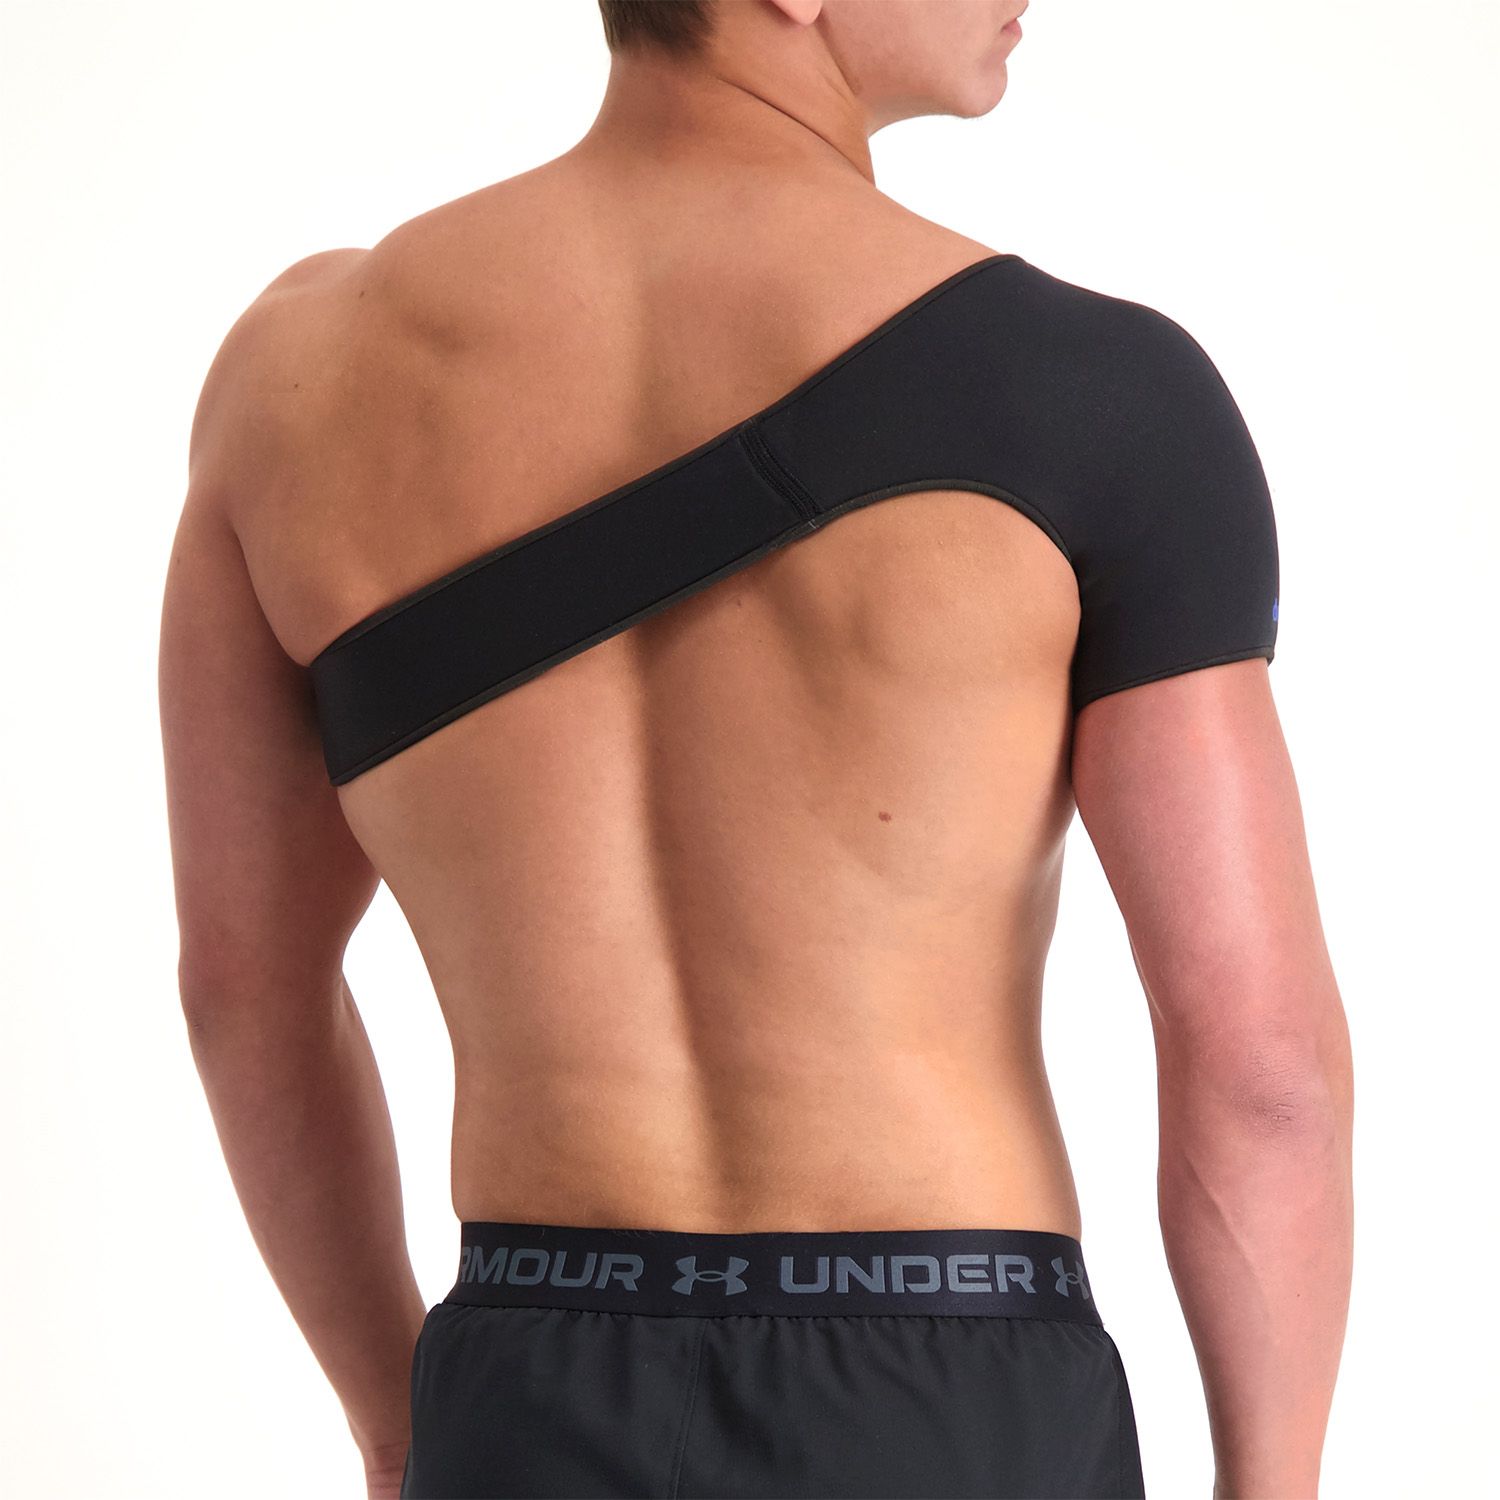 Dunimed shoulder support